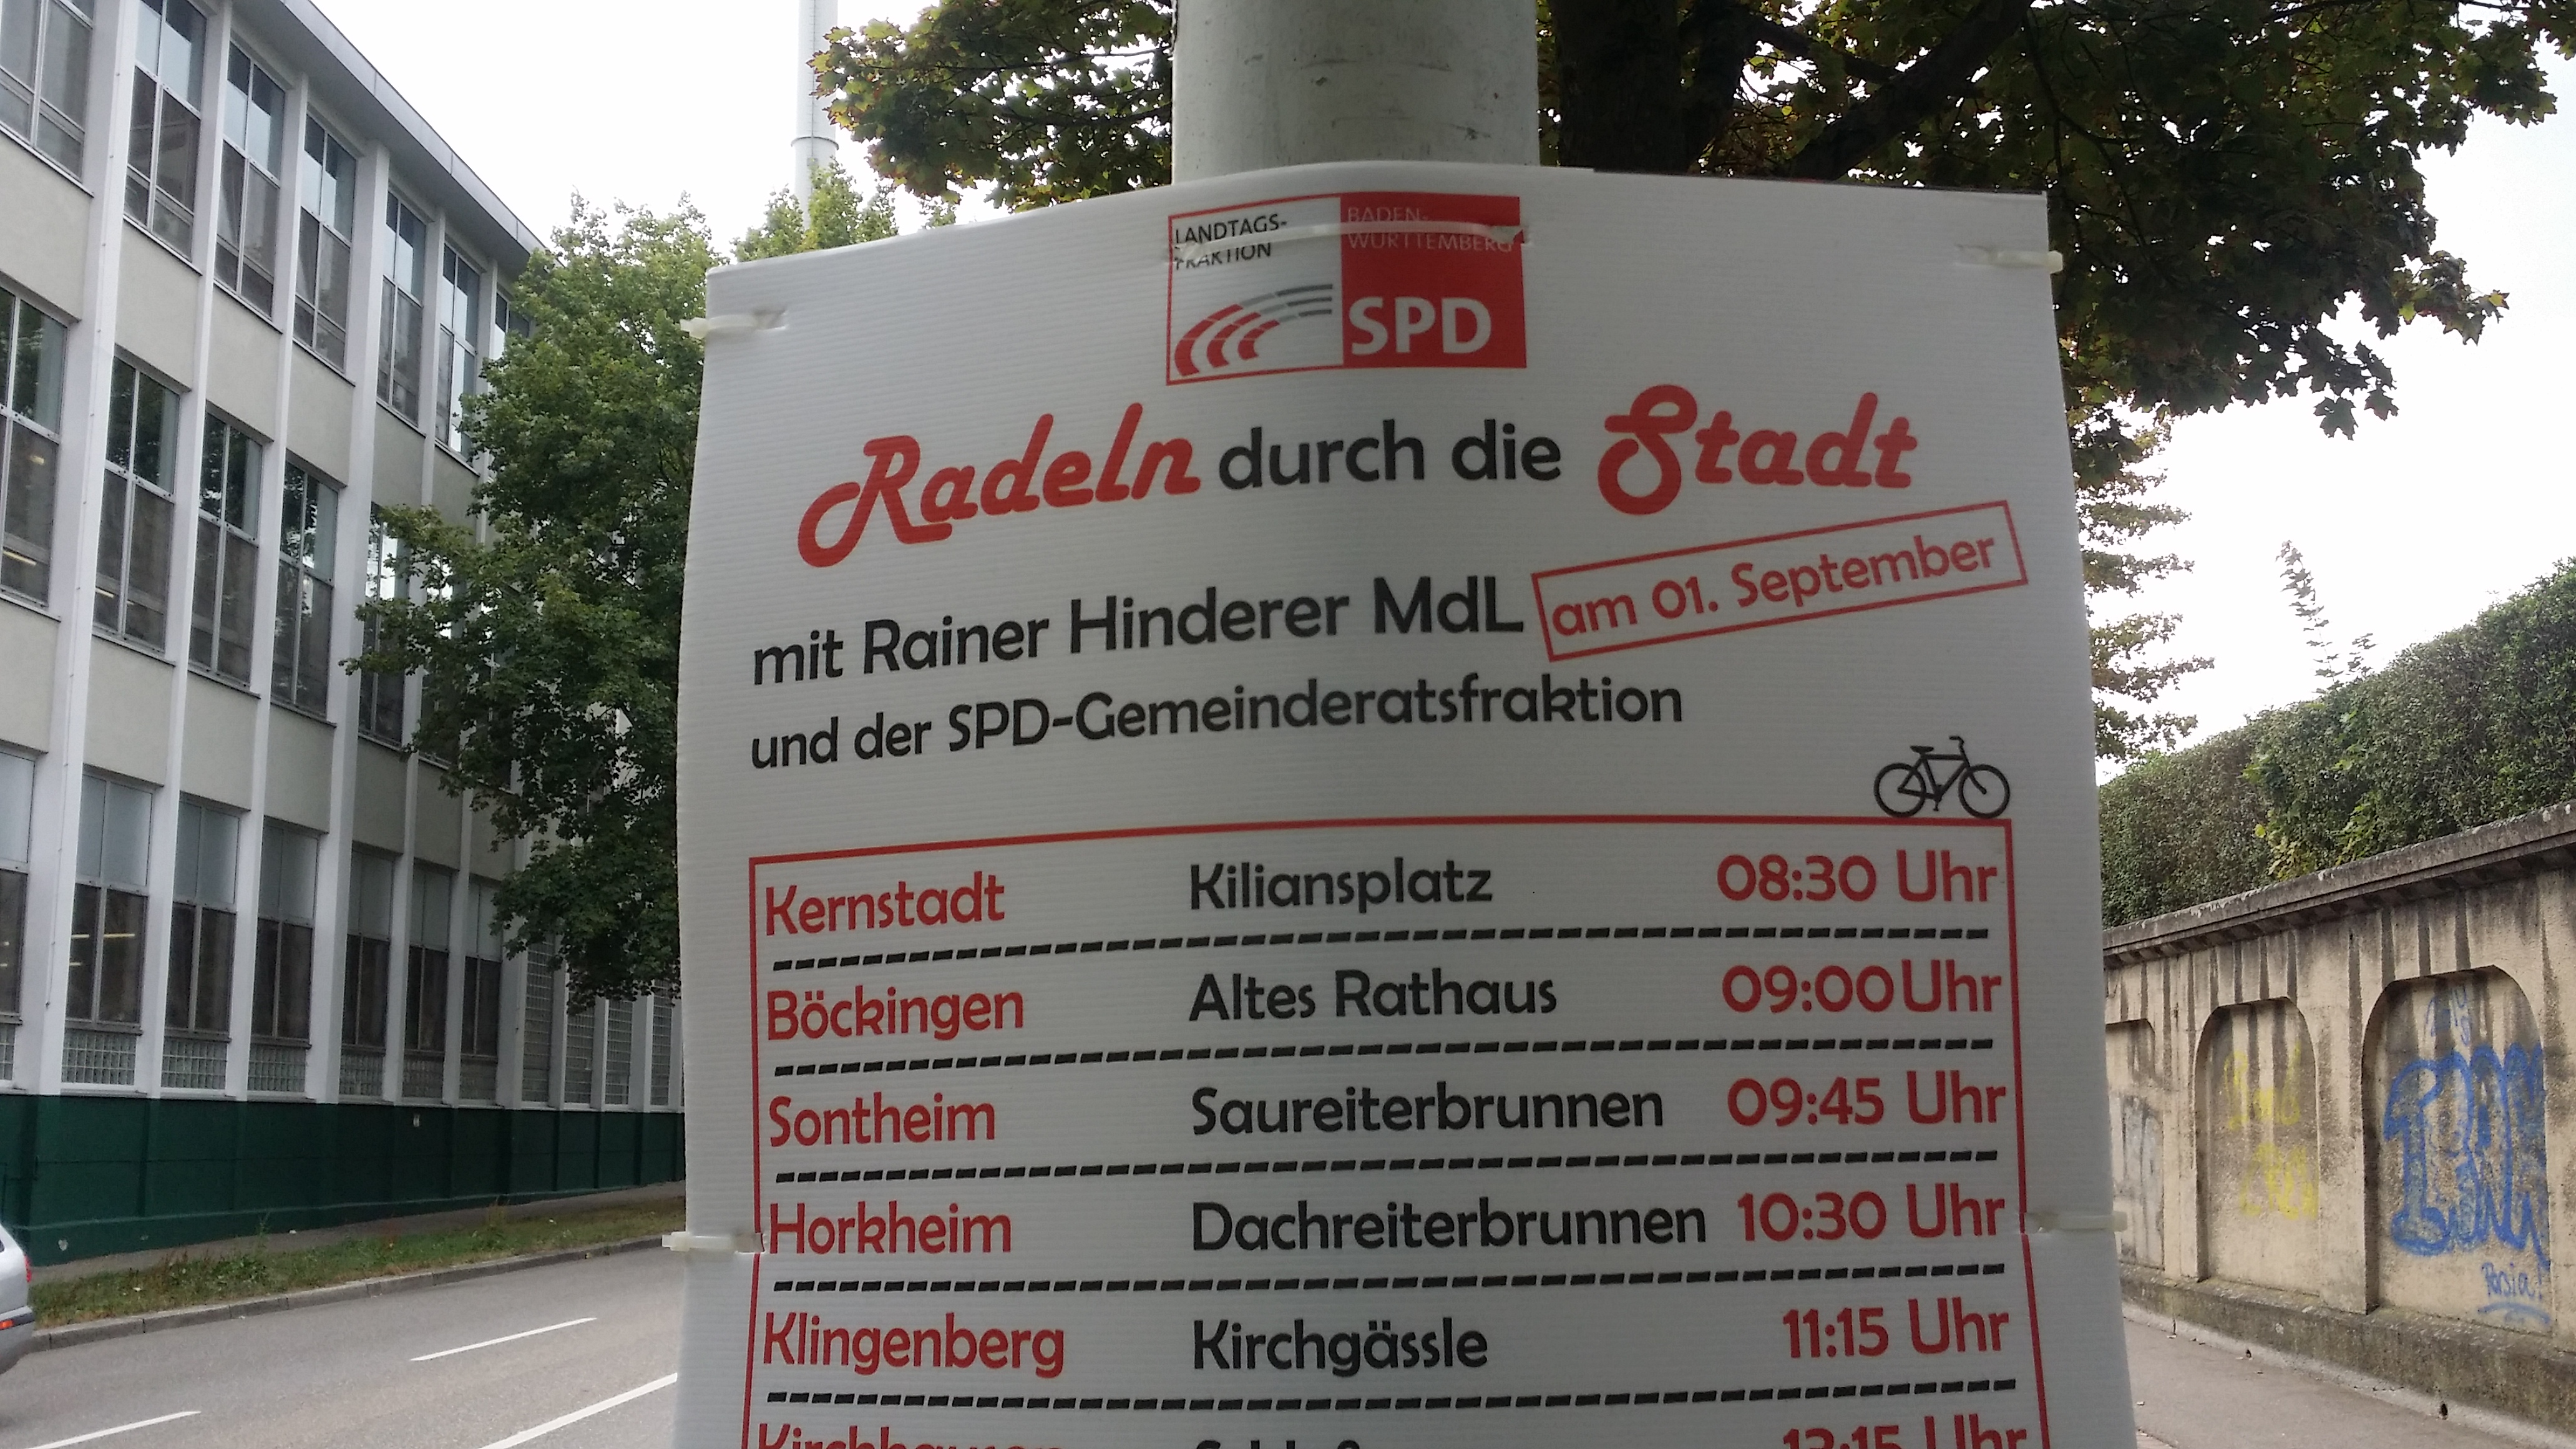 Bay schwätzt, die SPD-Stadtratsfraktion “säuft” und Hinderer radelt (überarbeitet)